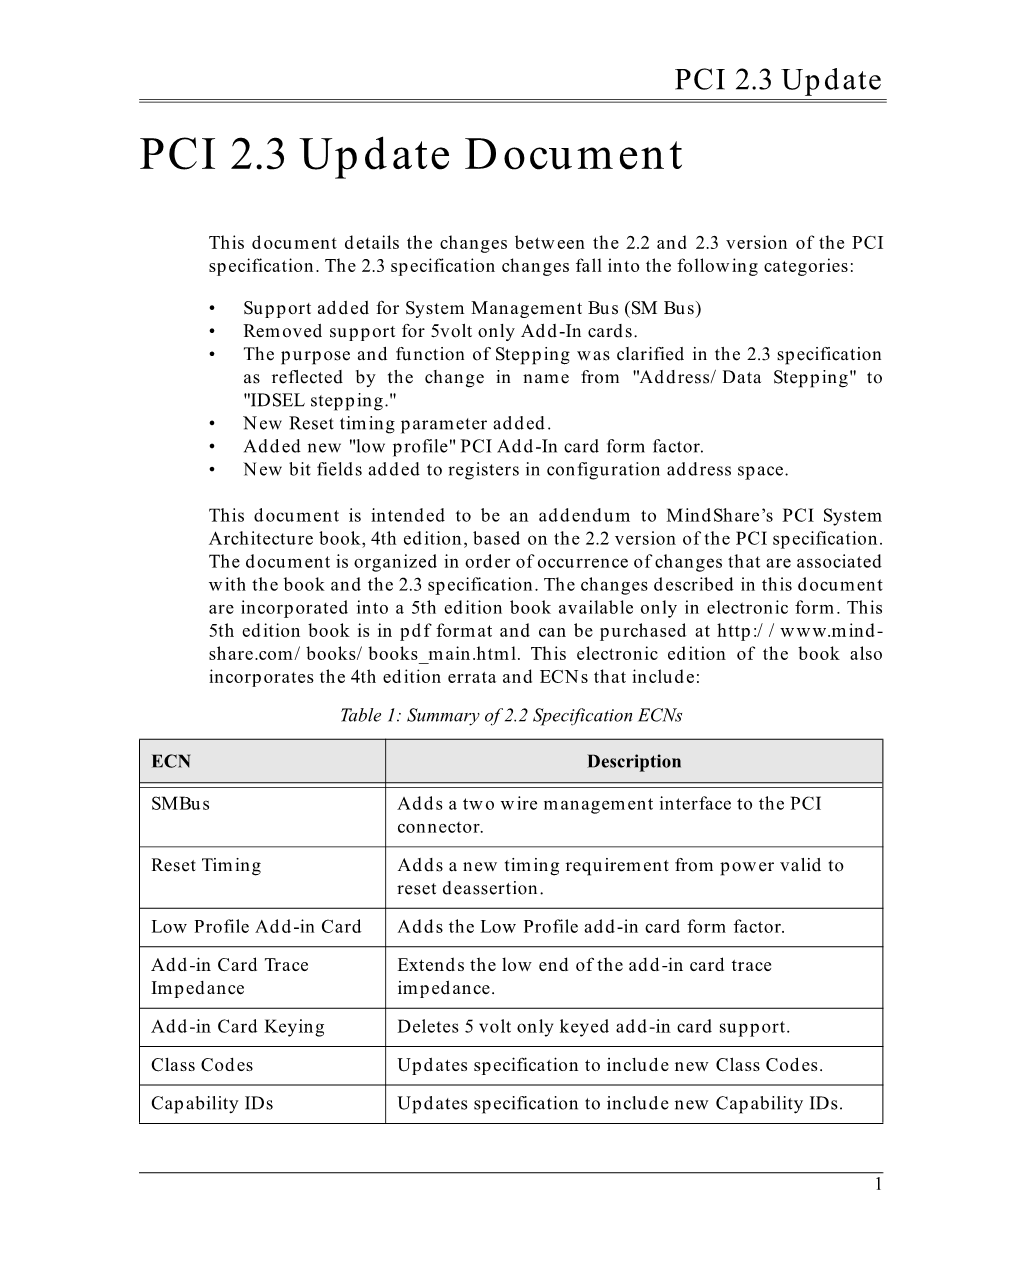 PCI 2.3 Book Addendum